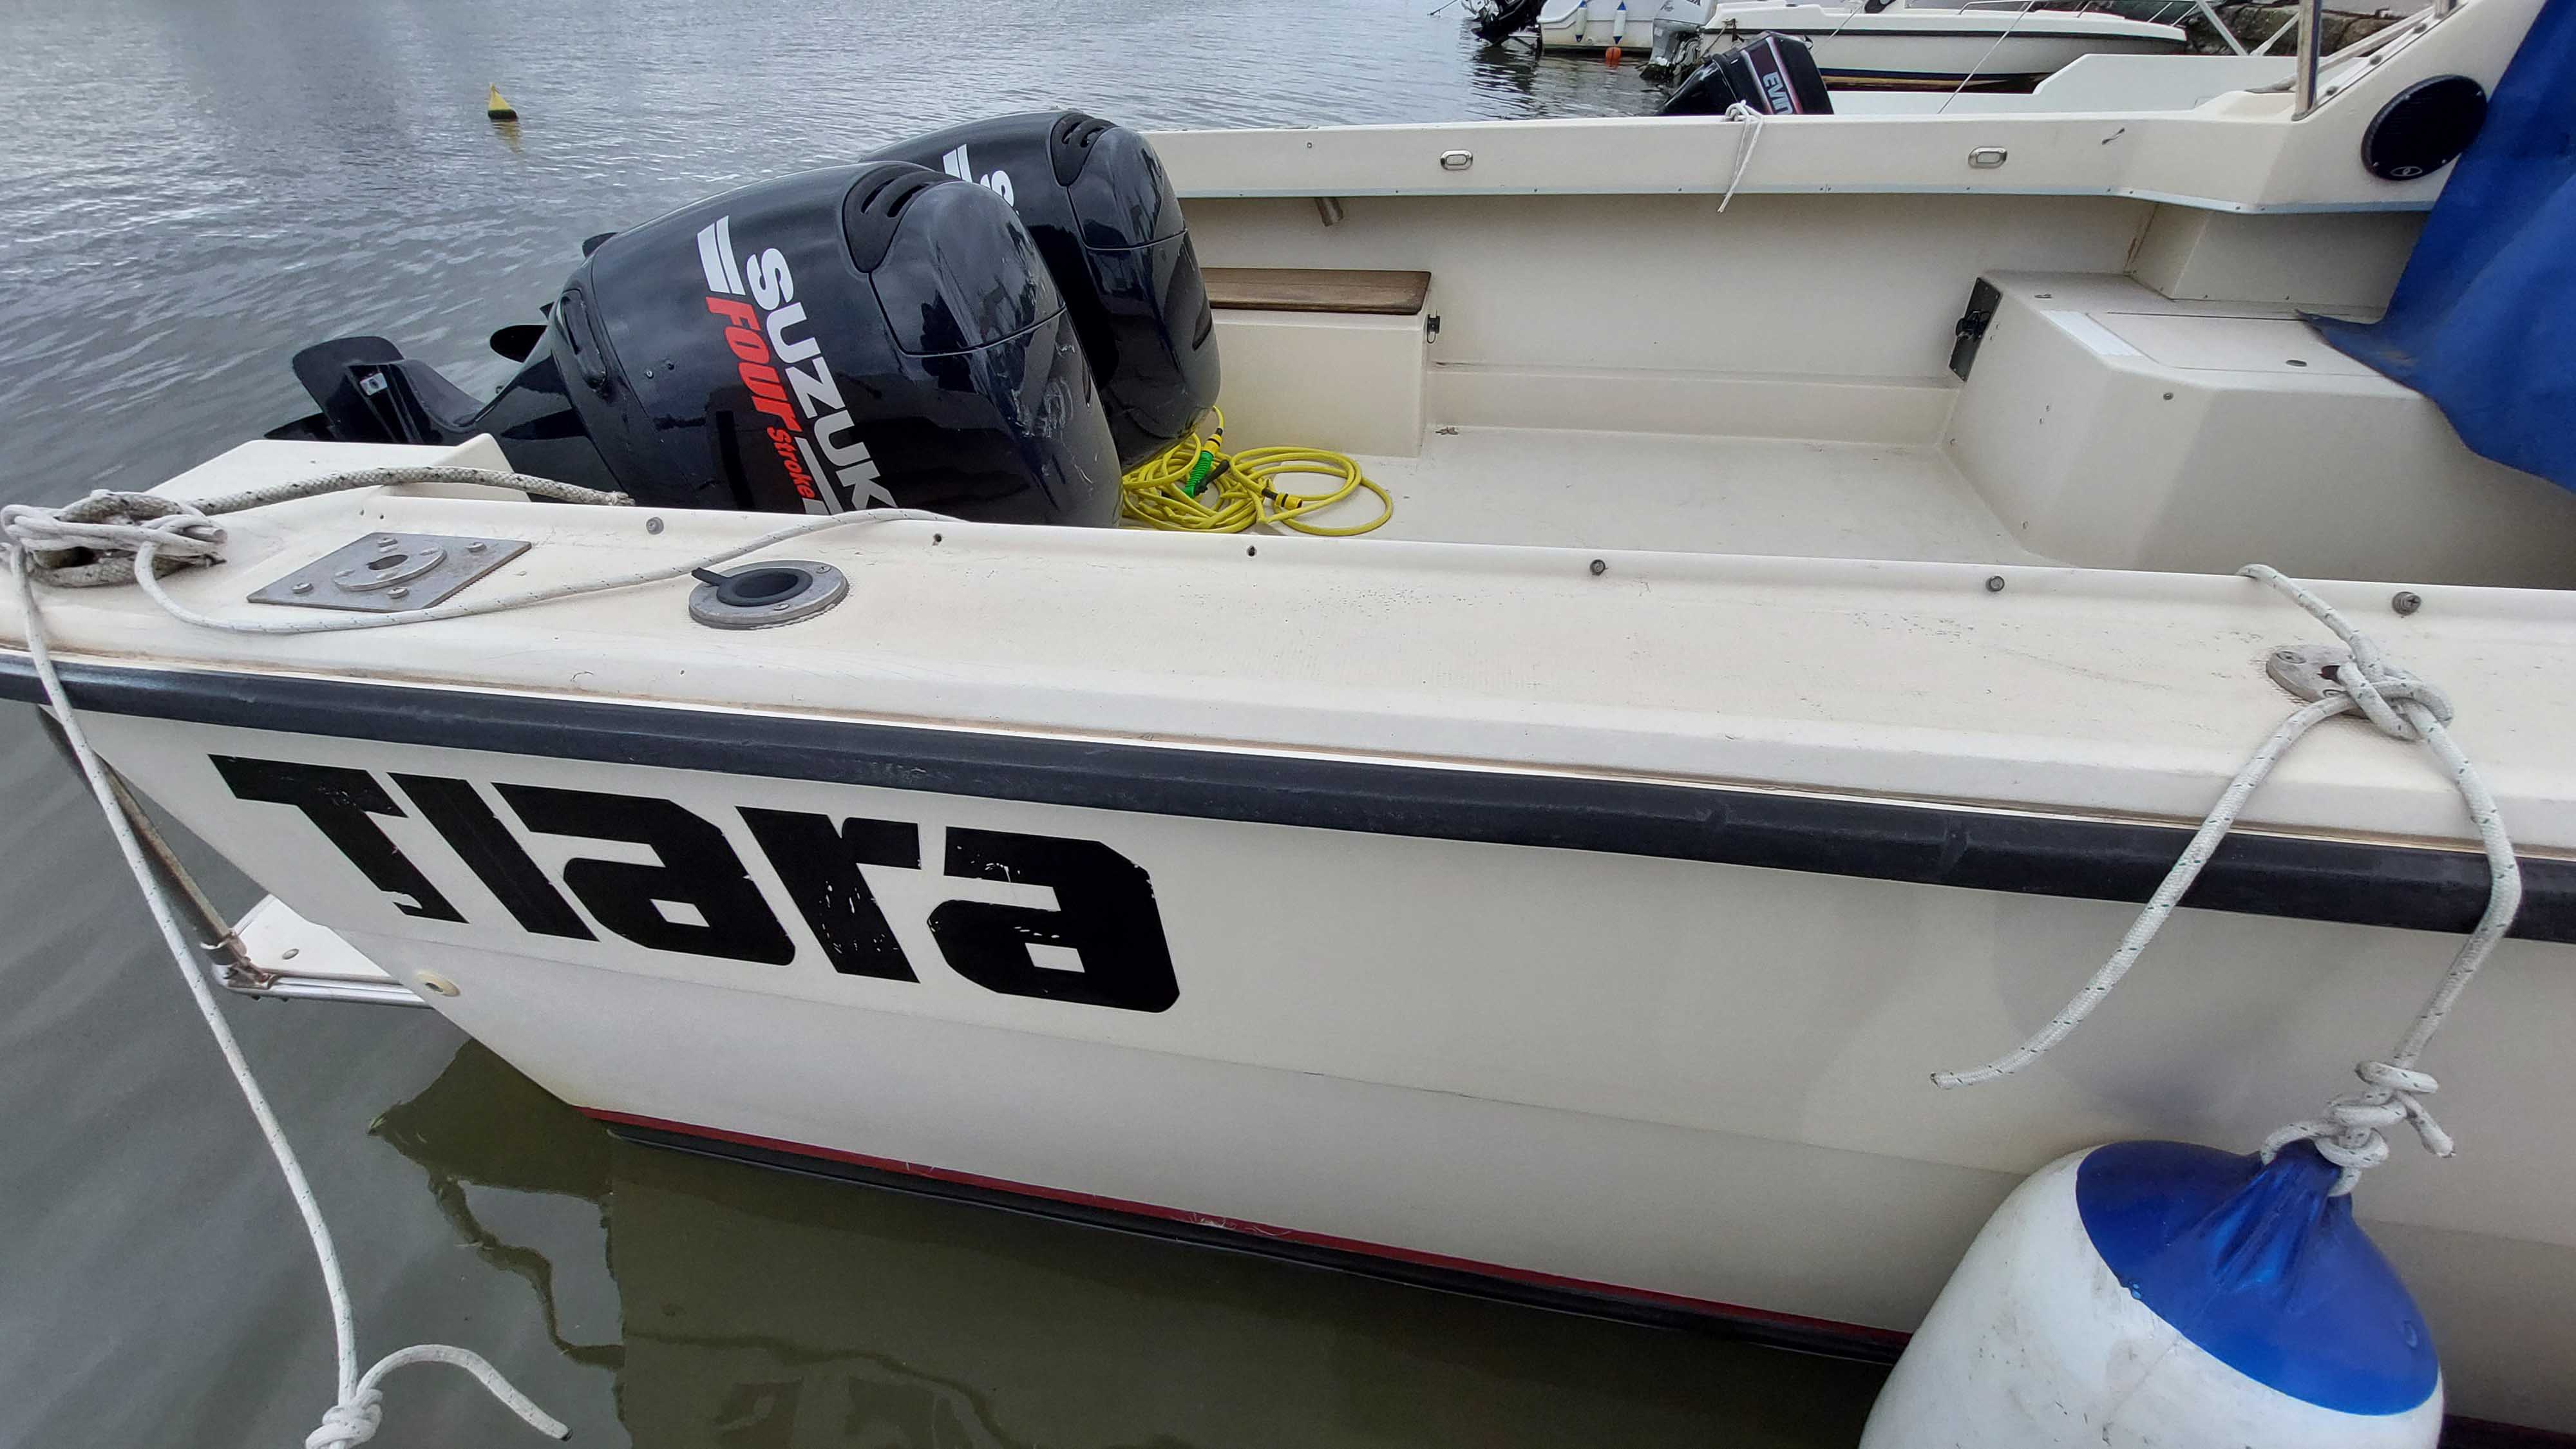 TIARA 25 EXPRESS FISHERMAN BOAT NATANTE BARCO BATEAUX LIVORNO BOATS USA